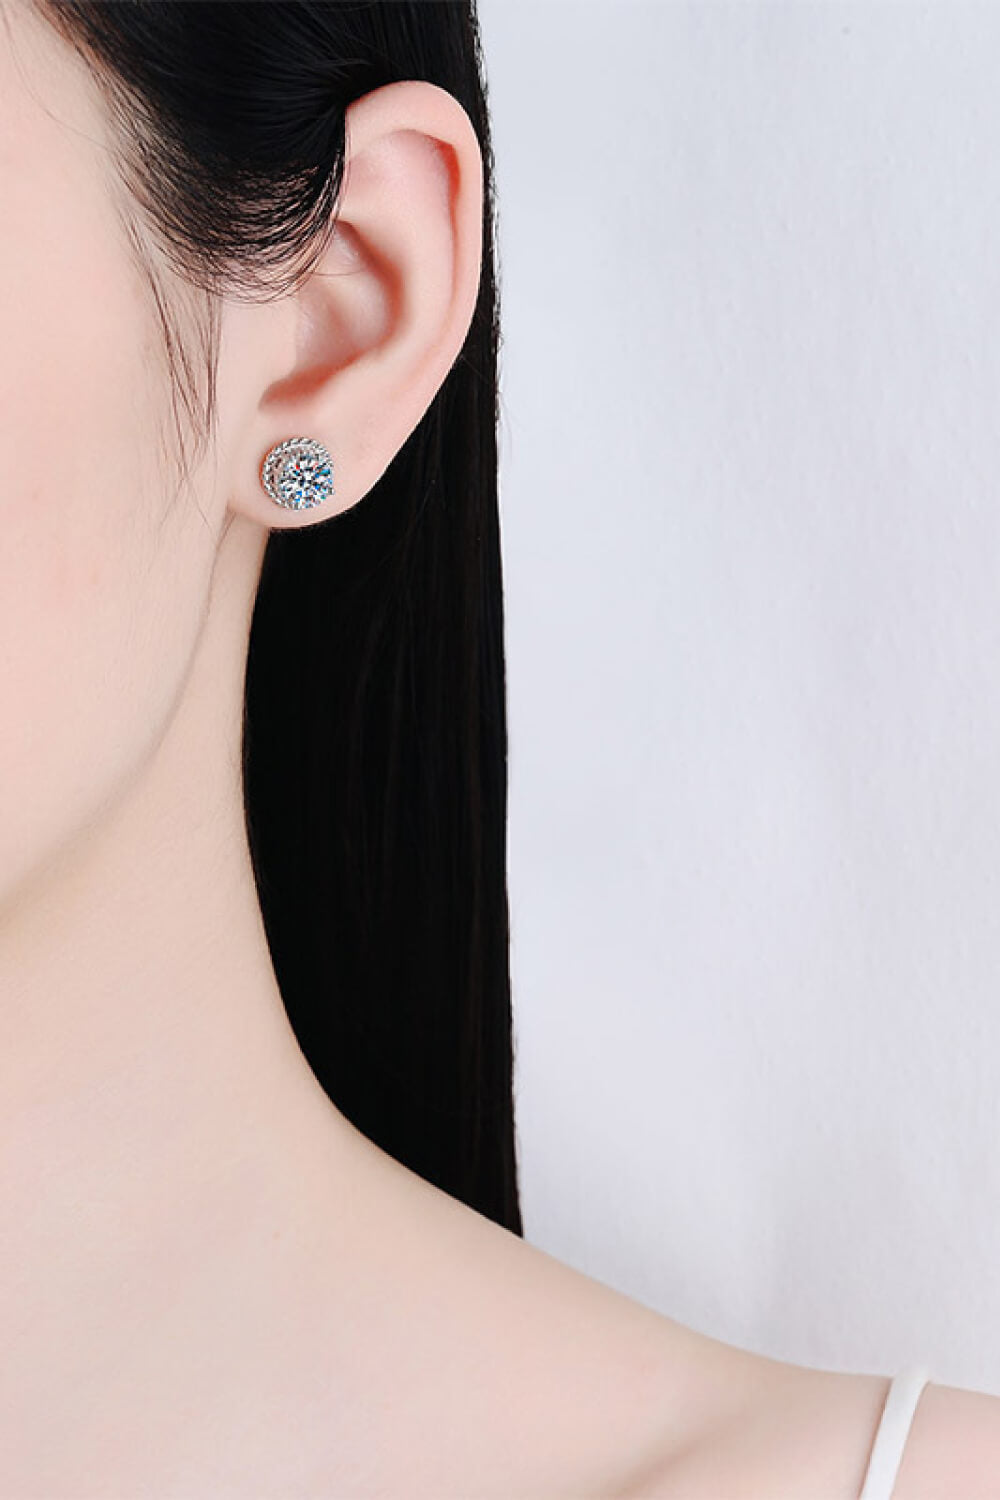 Moissanite Round Stud Earrings Image4